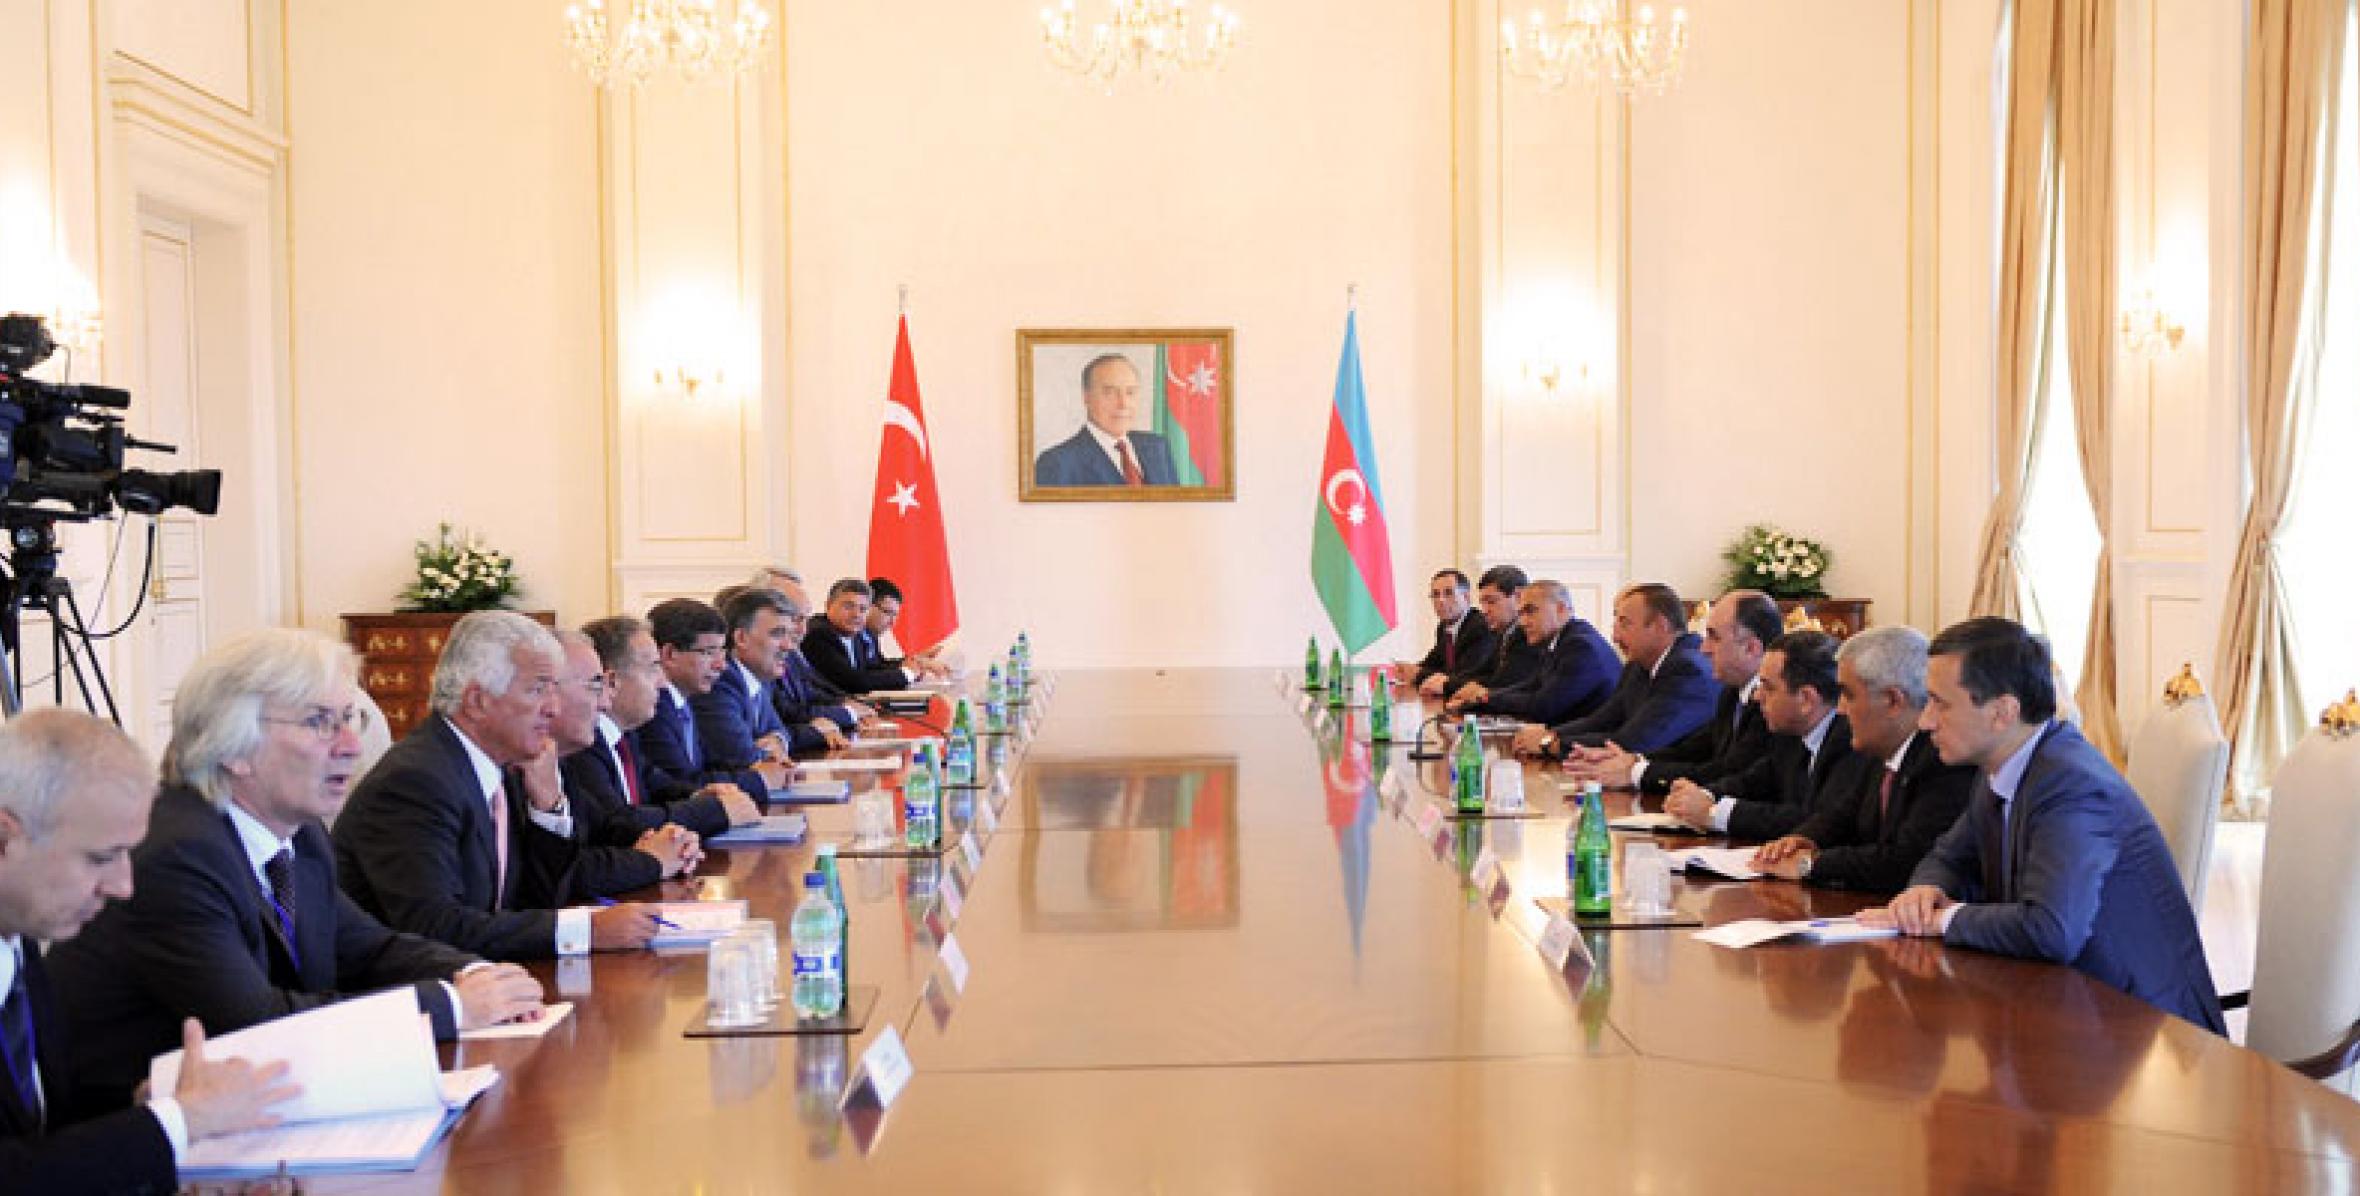 Состоялась встреча Ильхама Алиева и Абдуллаха Гюля в расширенном составе с участием делегаций